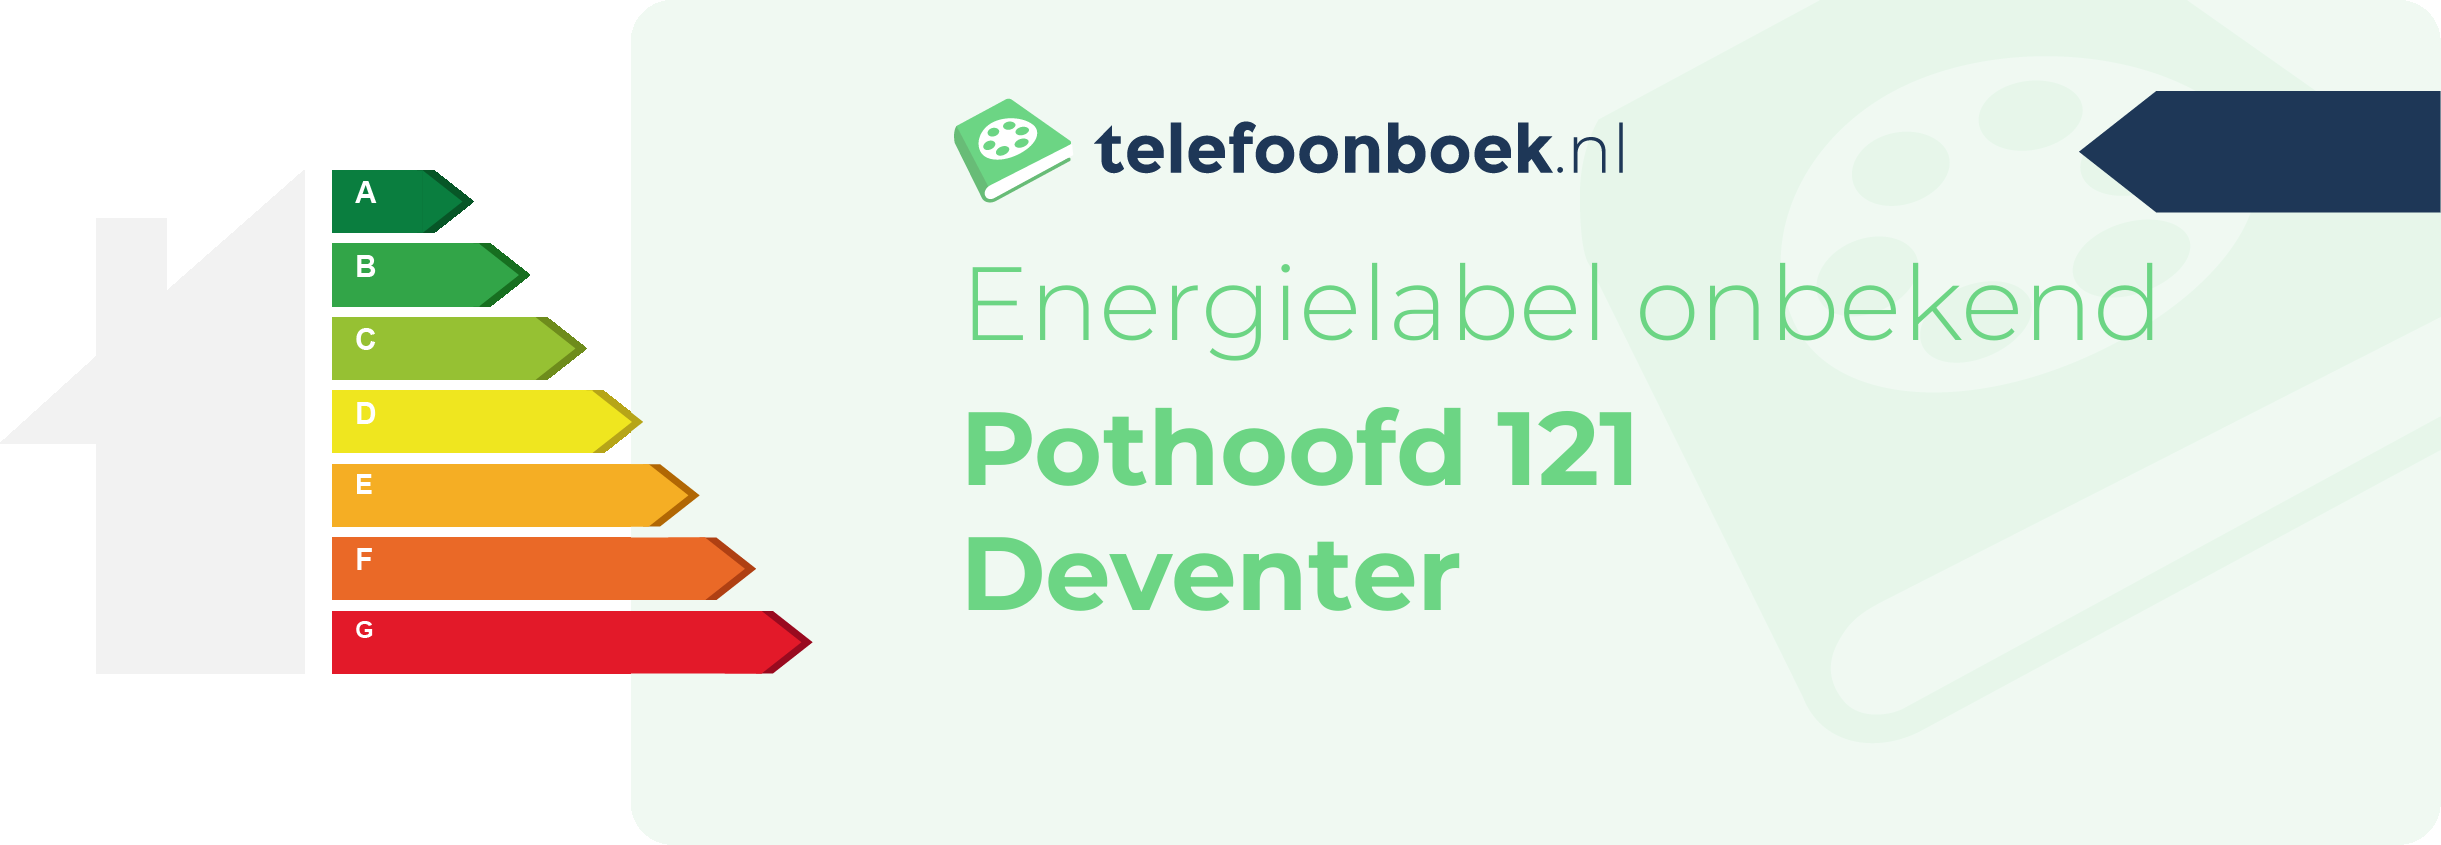 Energielabel Pothoofd 121 Deventer